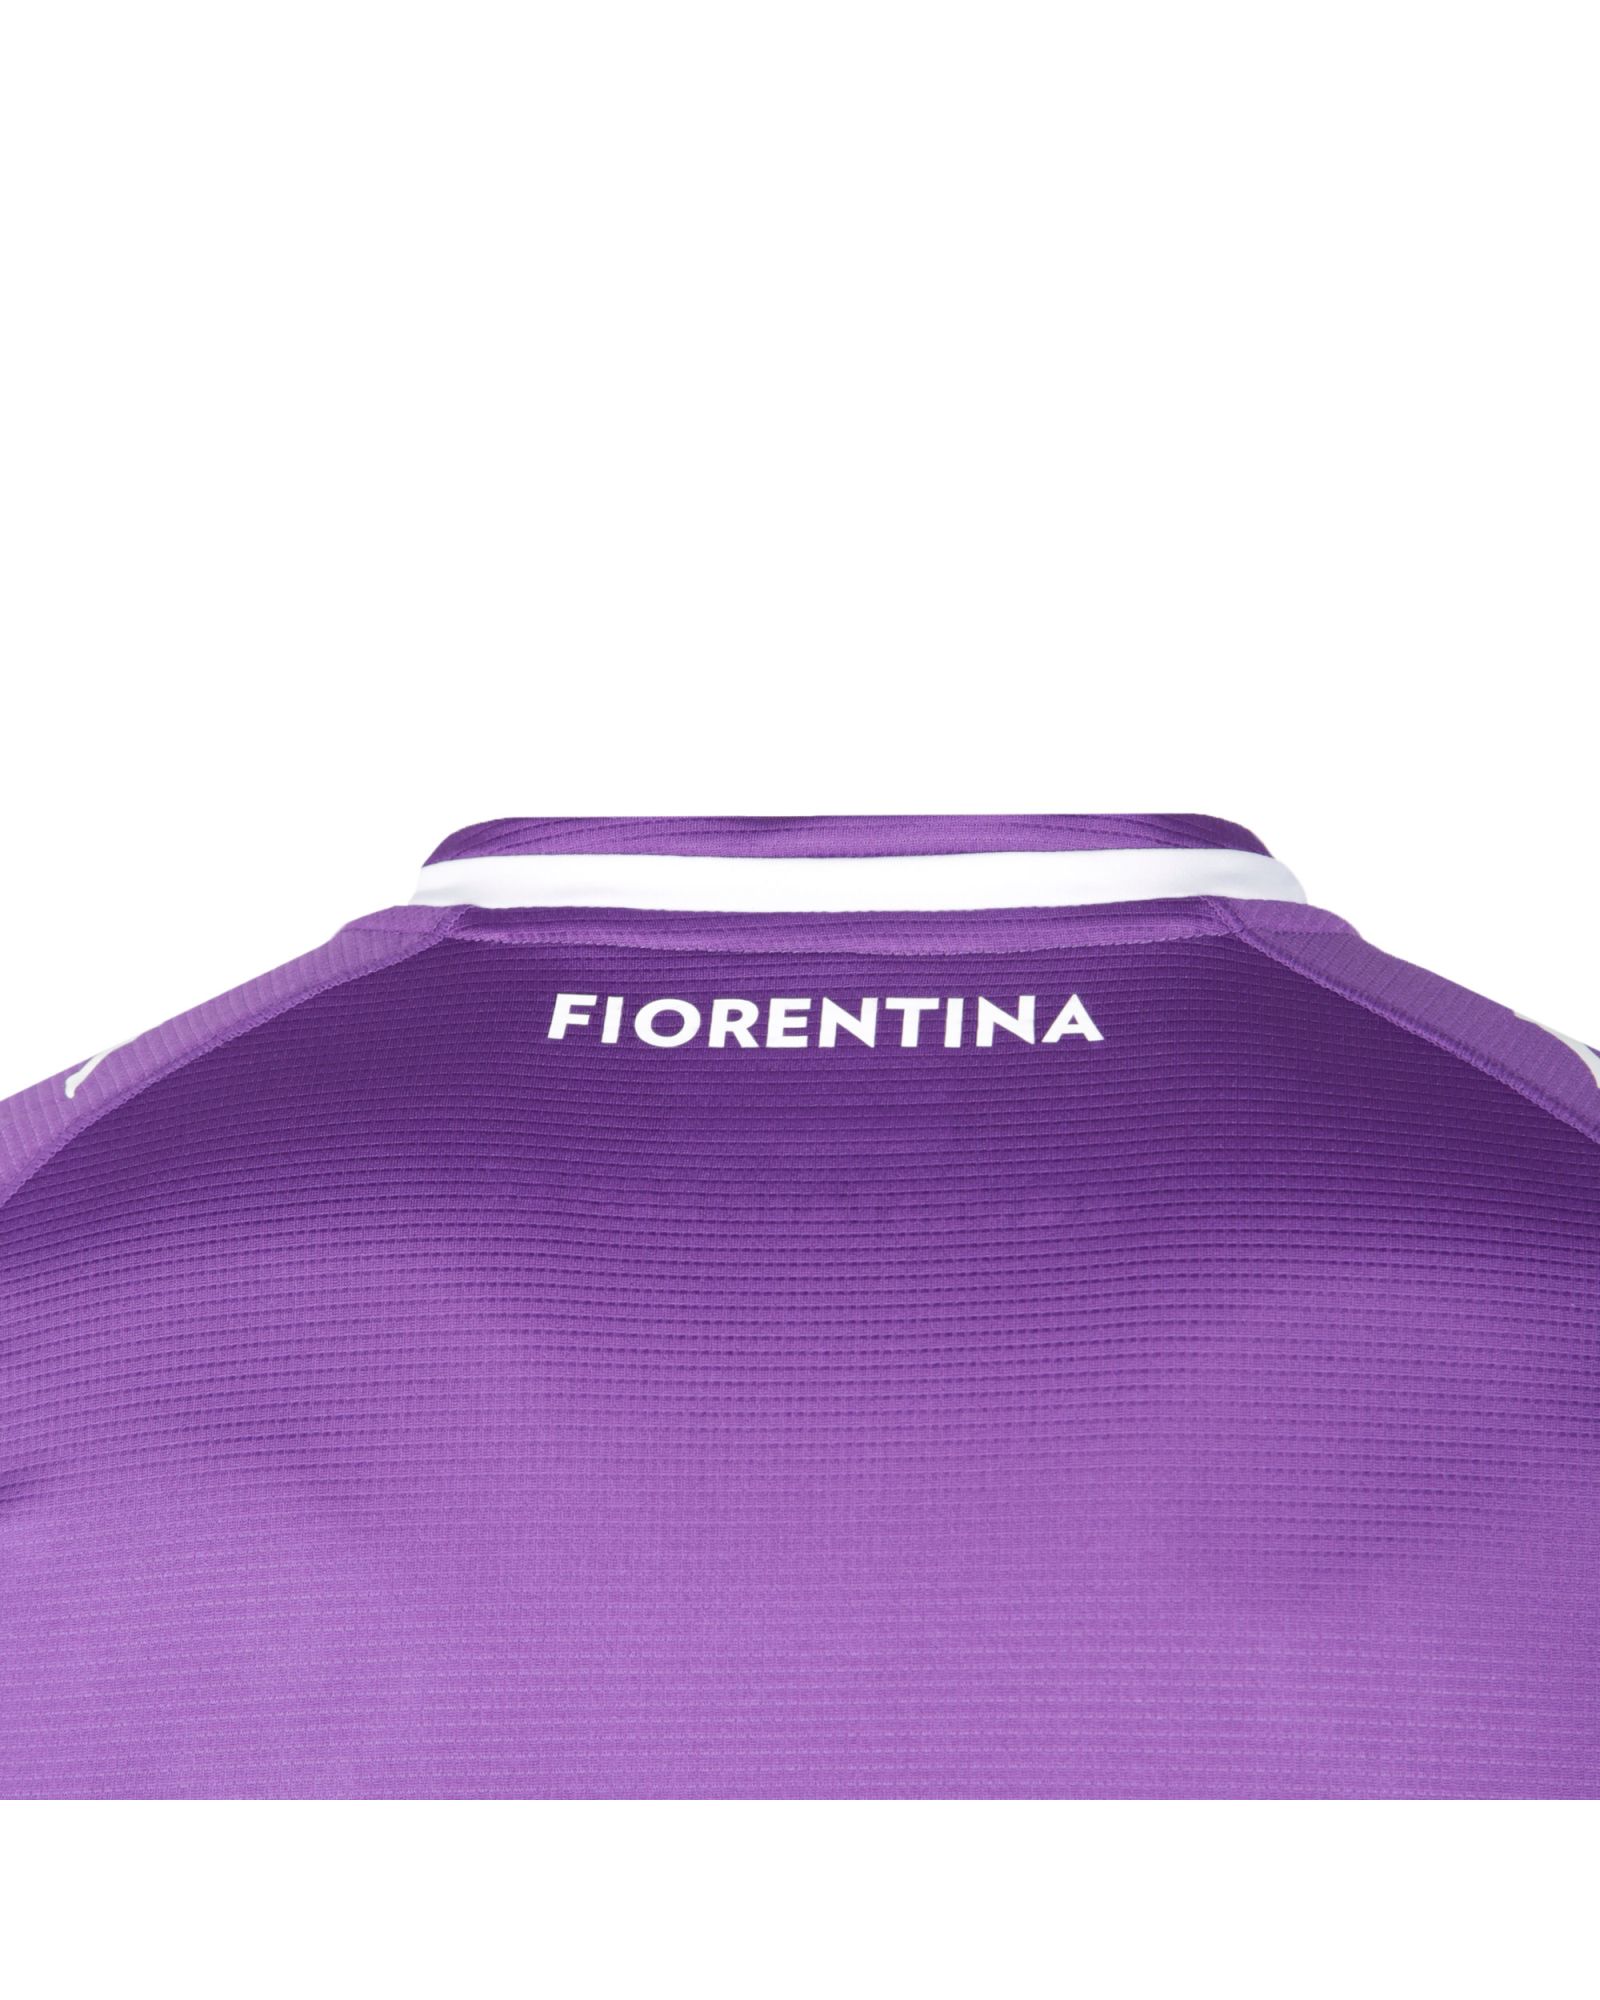 Camiseta ACF Fiorentina 2020/2021 - Fútbol Factory